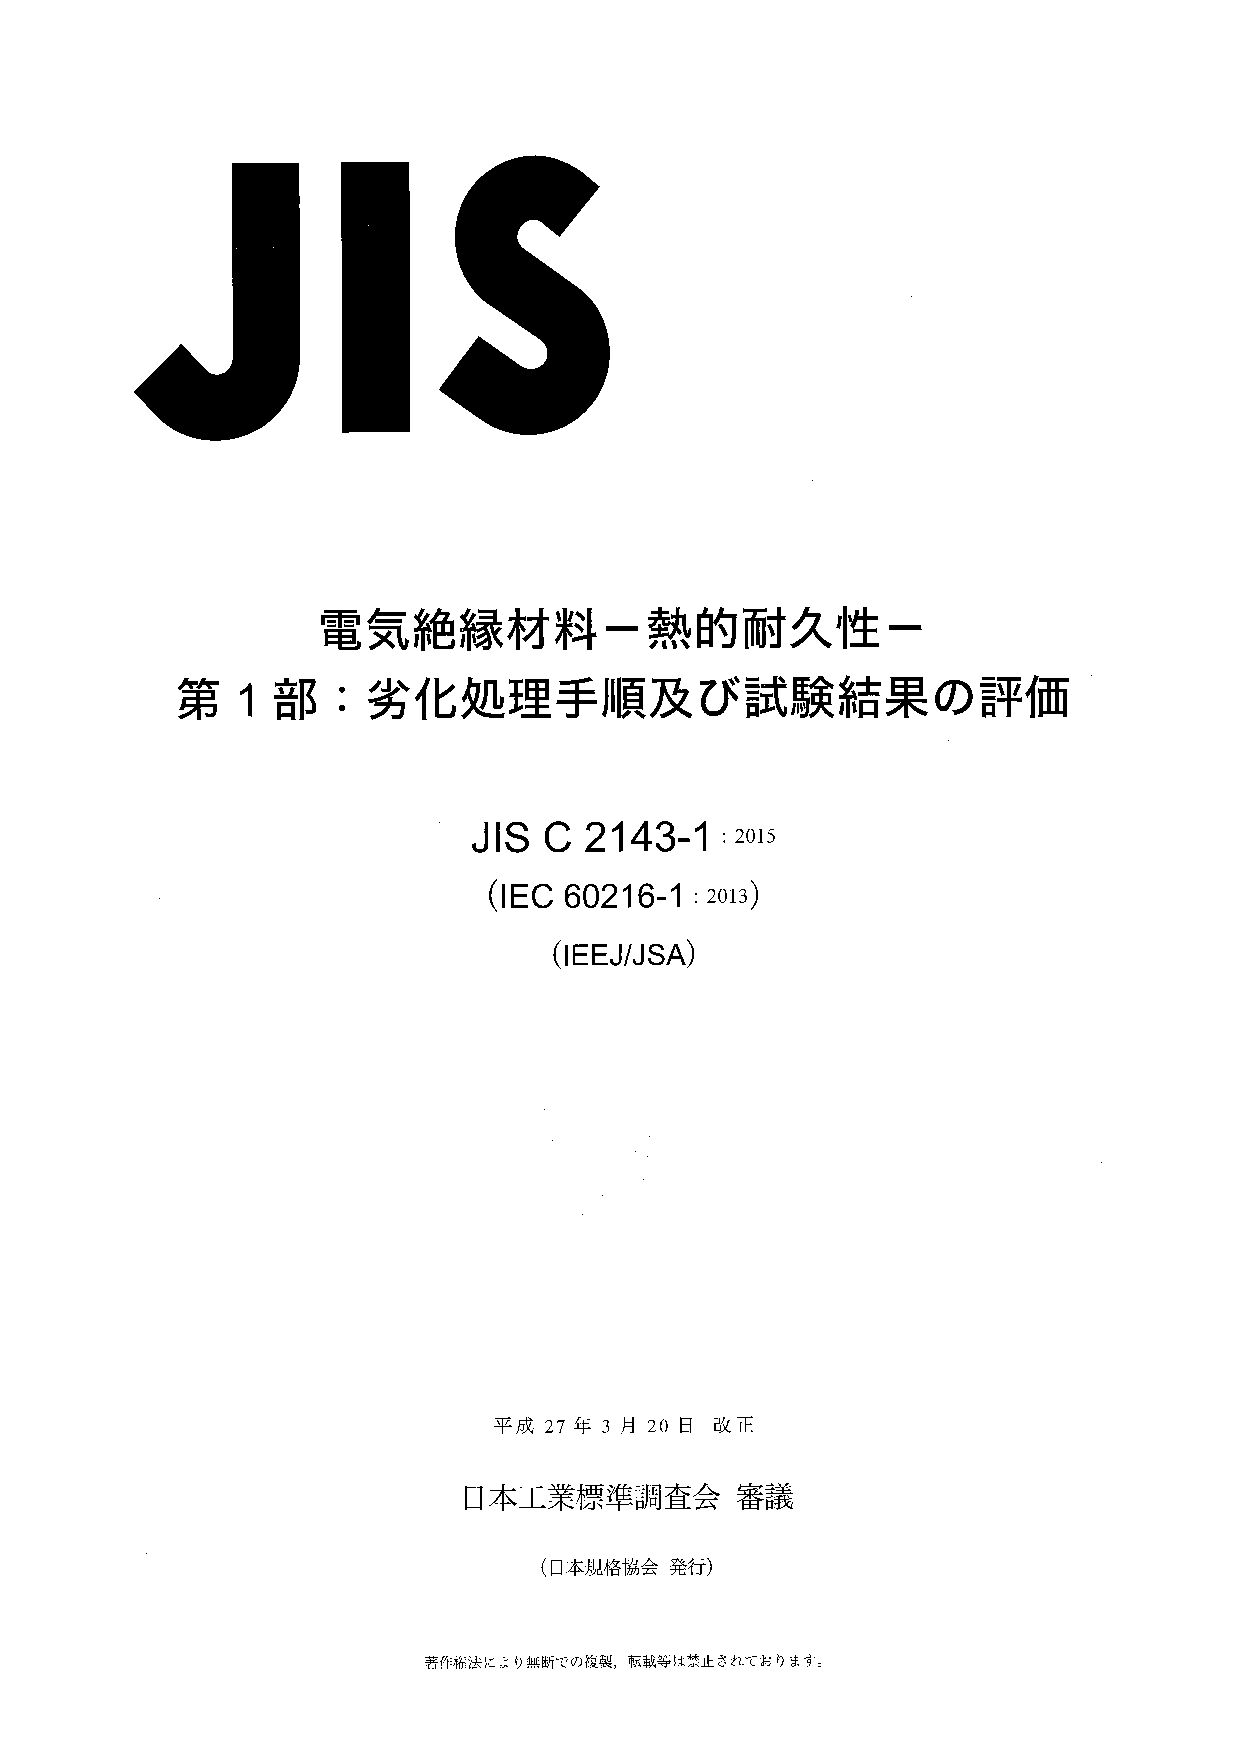 JIS C 2143-1:2015封面图